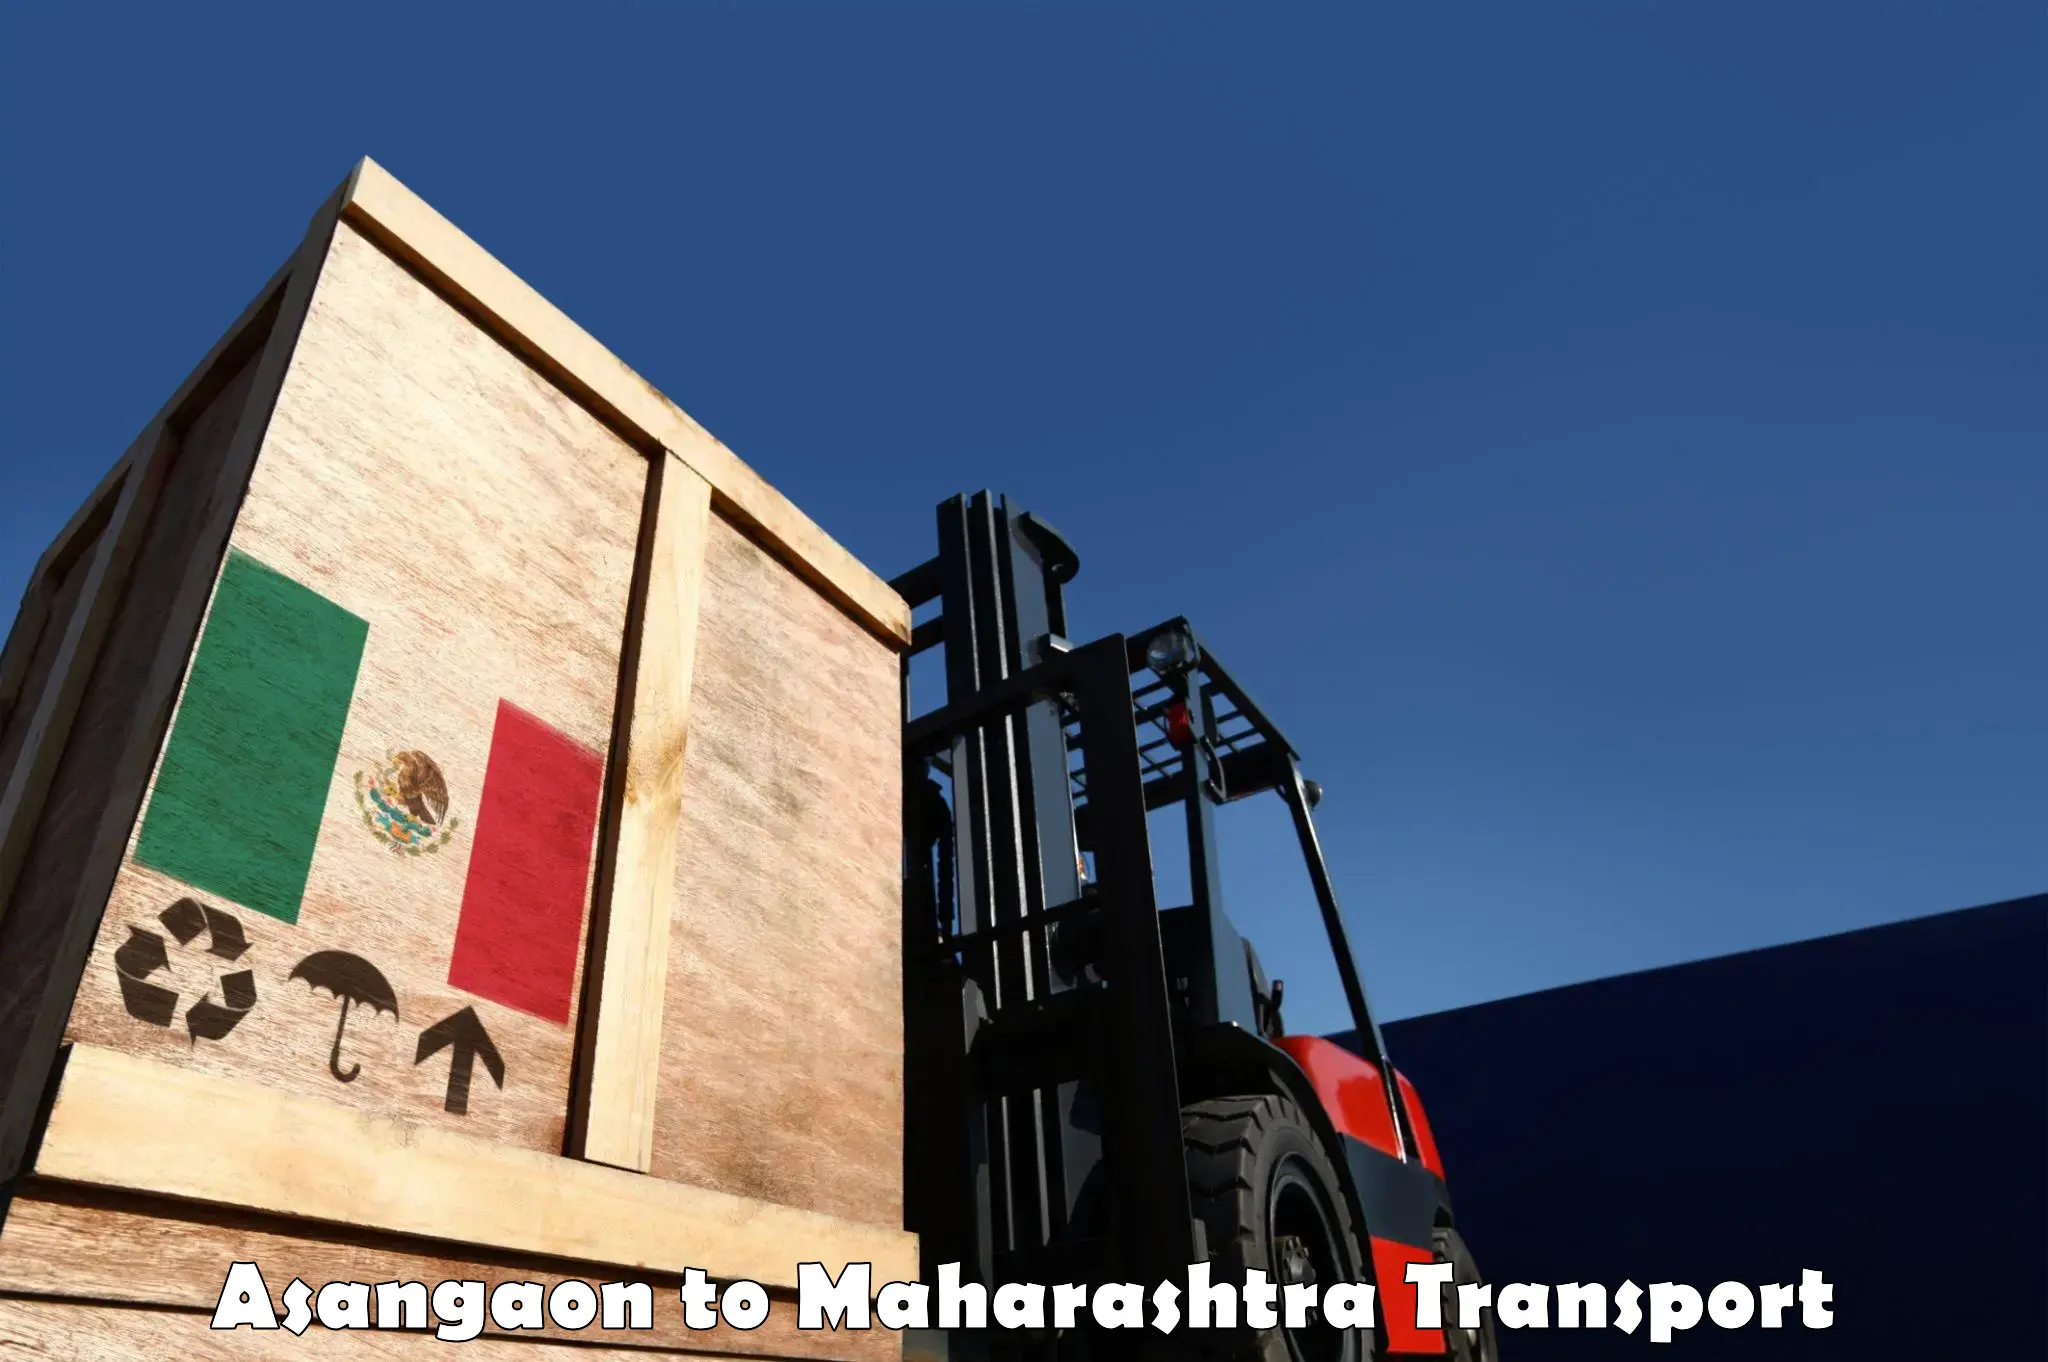 International cargo transportation services Asangaon to Andheri